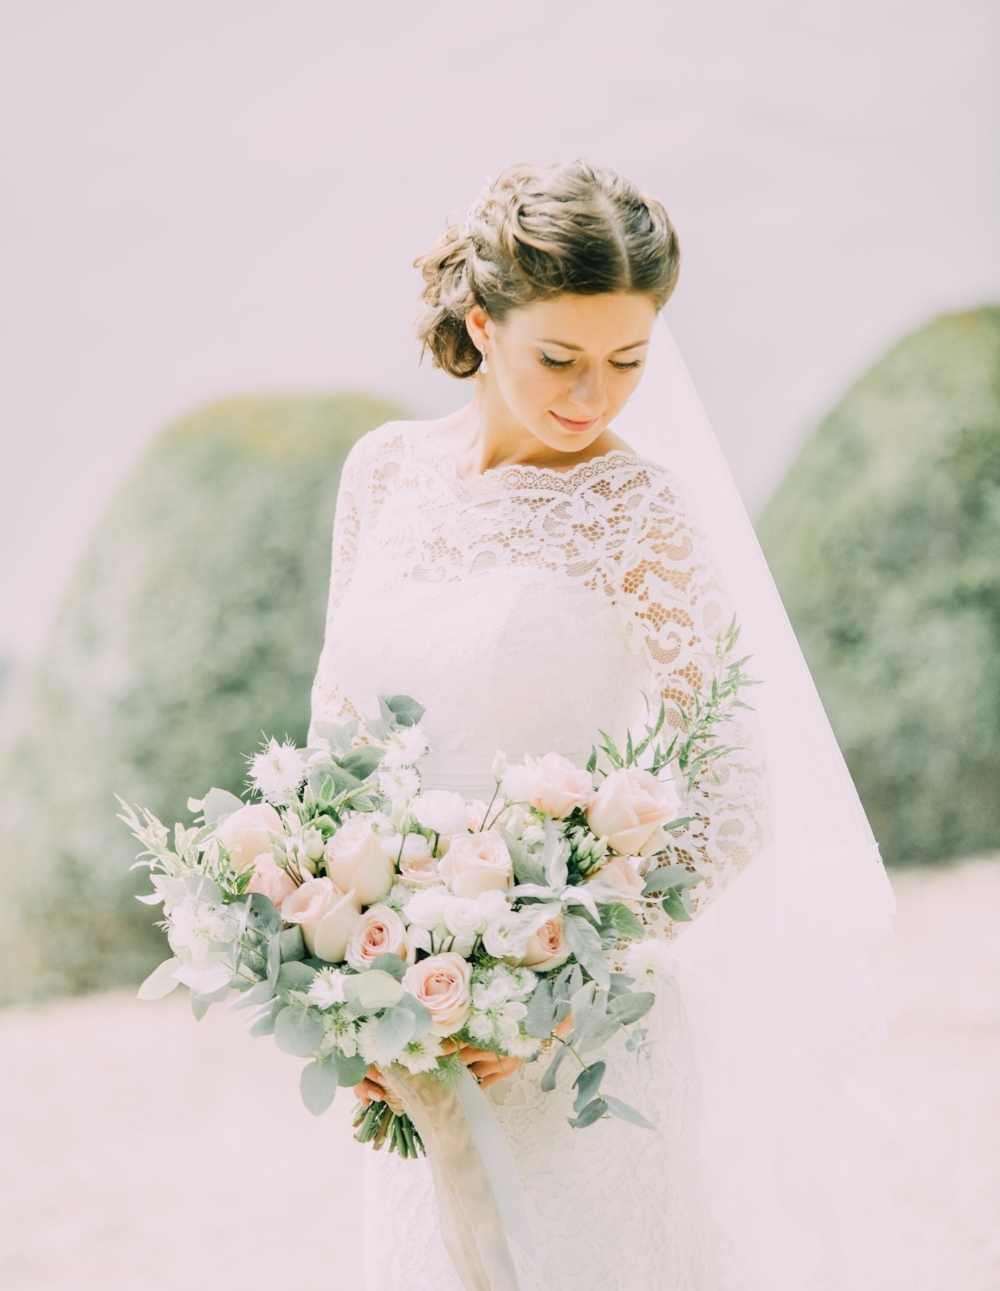 ongezond Exclusief silhouet bruidsboeket met tulpen — Bruiloft styling met bloemen, inspiratie en tips  — Bloemenmeisjes.com